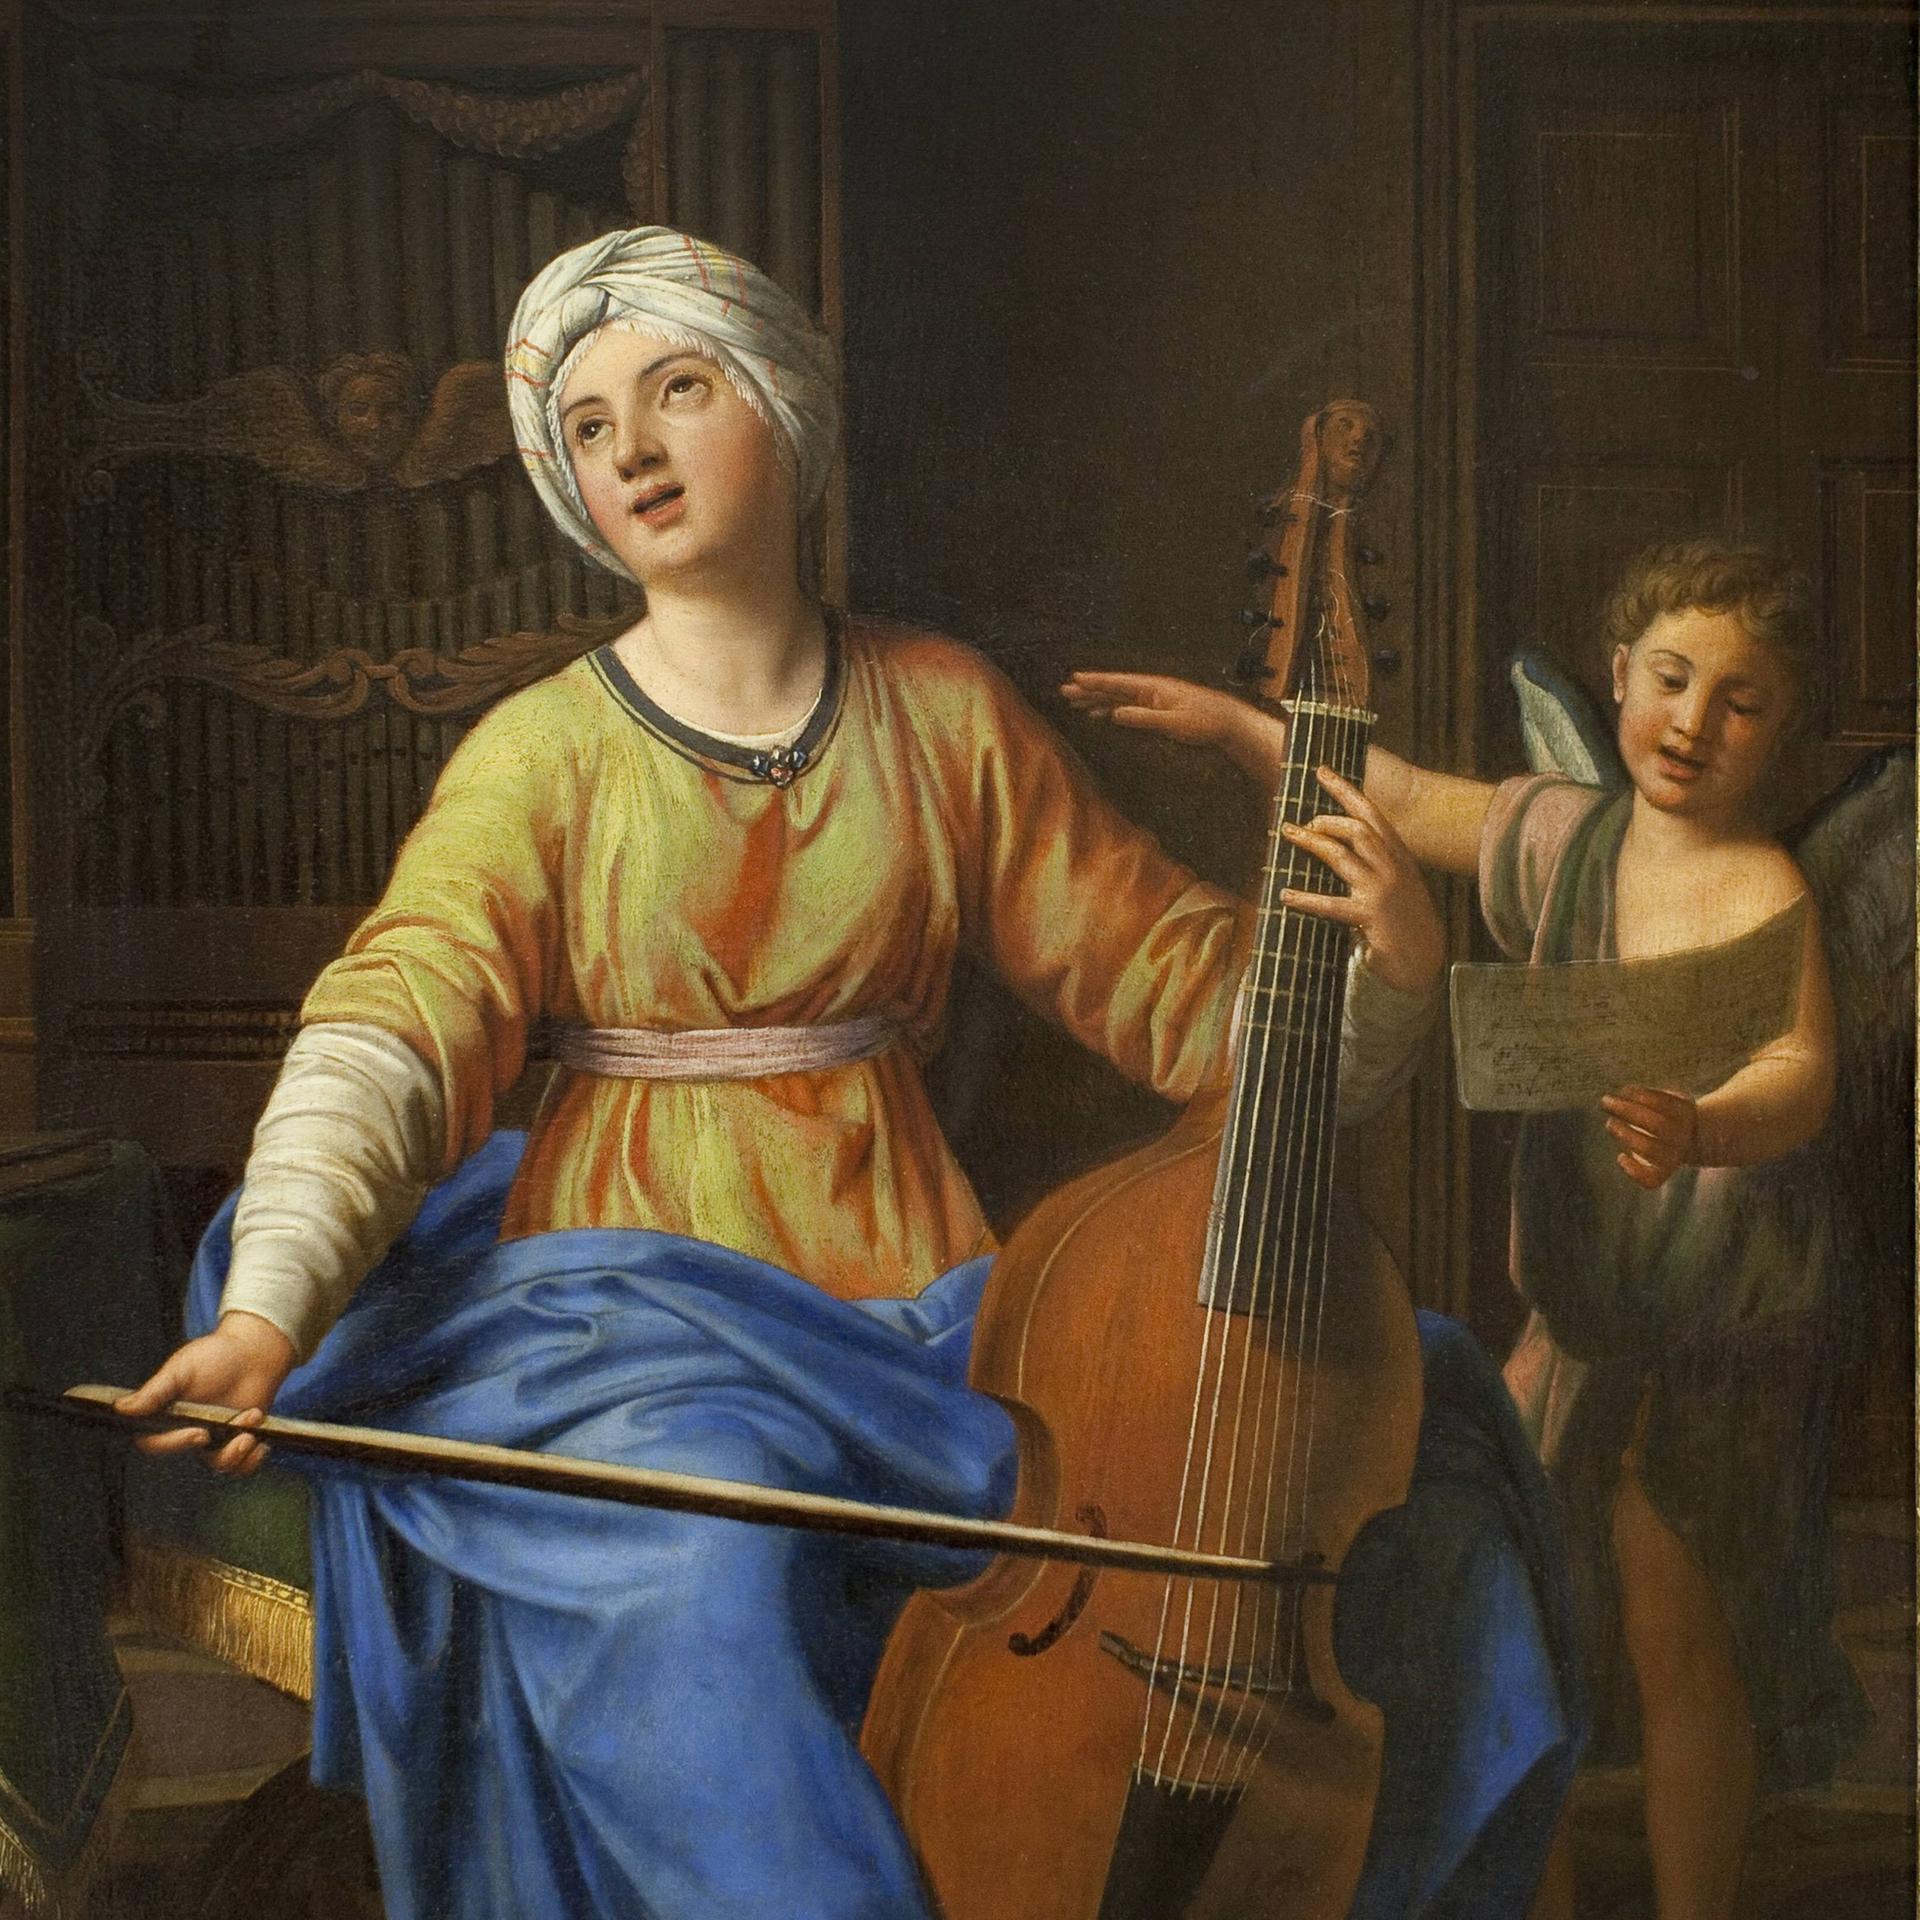 Auf dem Gemälde um 1700 ist eine junge Frau mit Turban zu sehen, die ein altes, celloartiges Saiteninstrument spielt und singt und dabei von einem Putten-Engel unterstützt wird, der ihr das Notenblatt hält.